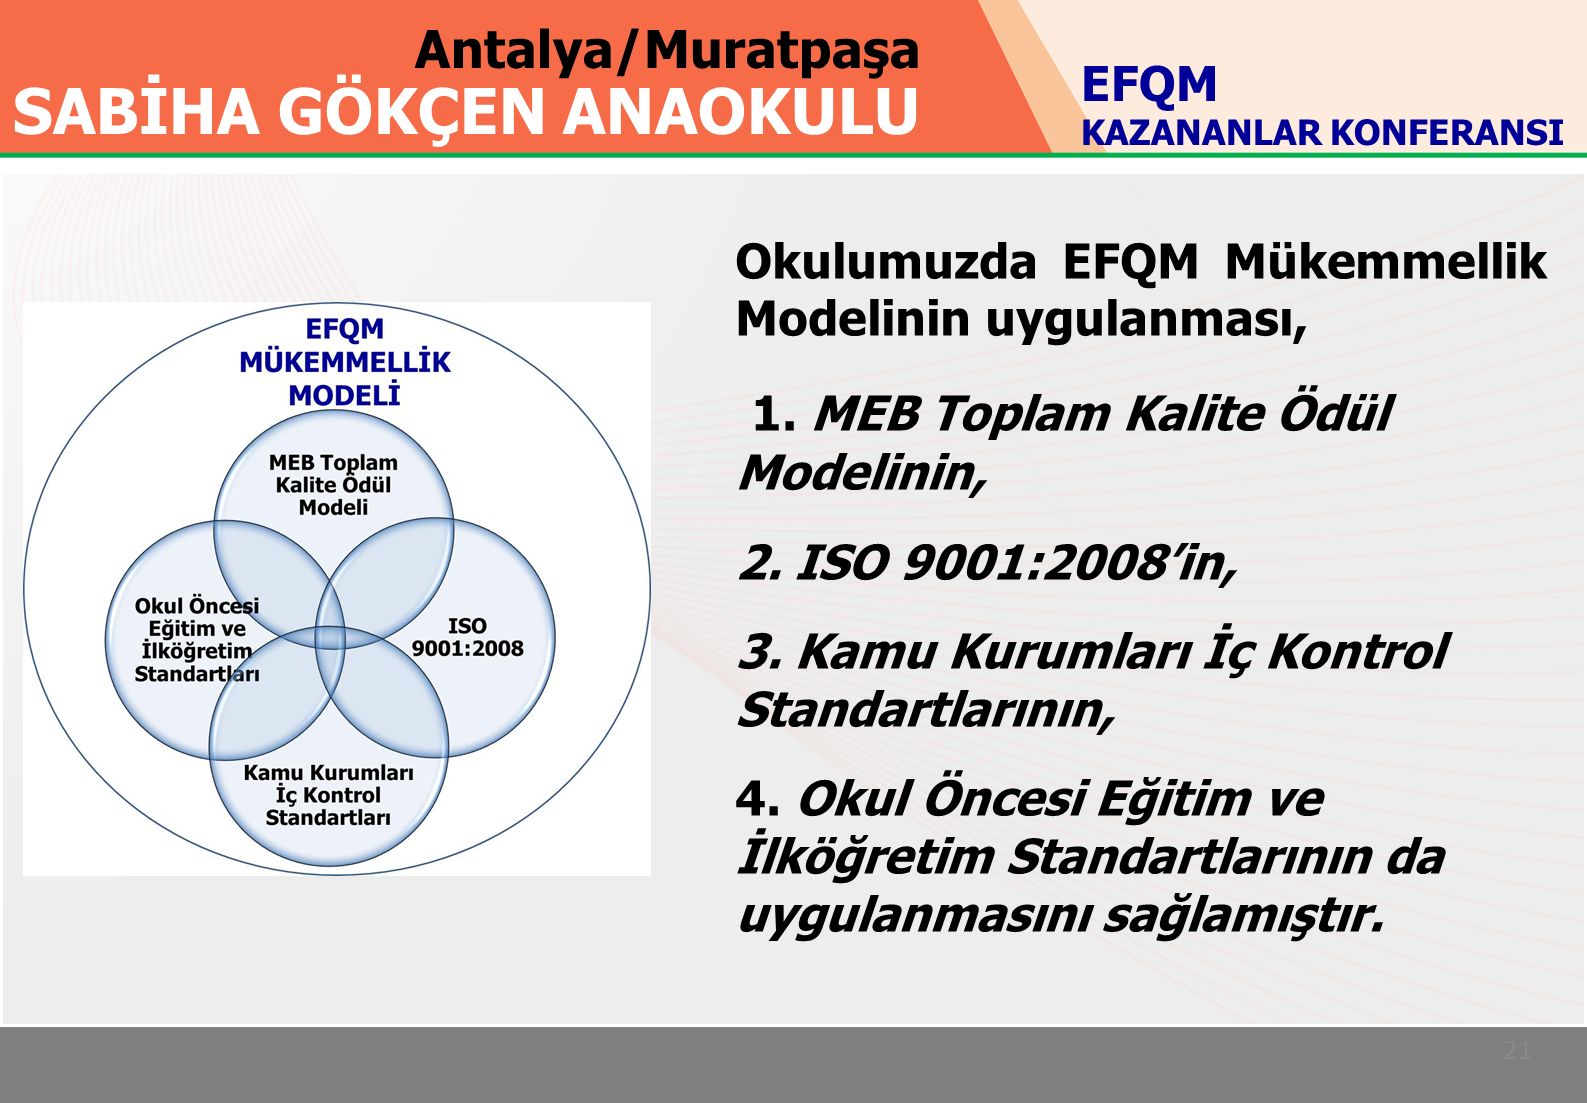 Antalya/Muratpaşa SABİHA GÖKÇEN ANAOKULU 21 Okulumuzda EFQM Mükemmellik Modelinin uygulanması, 1.